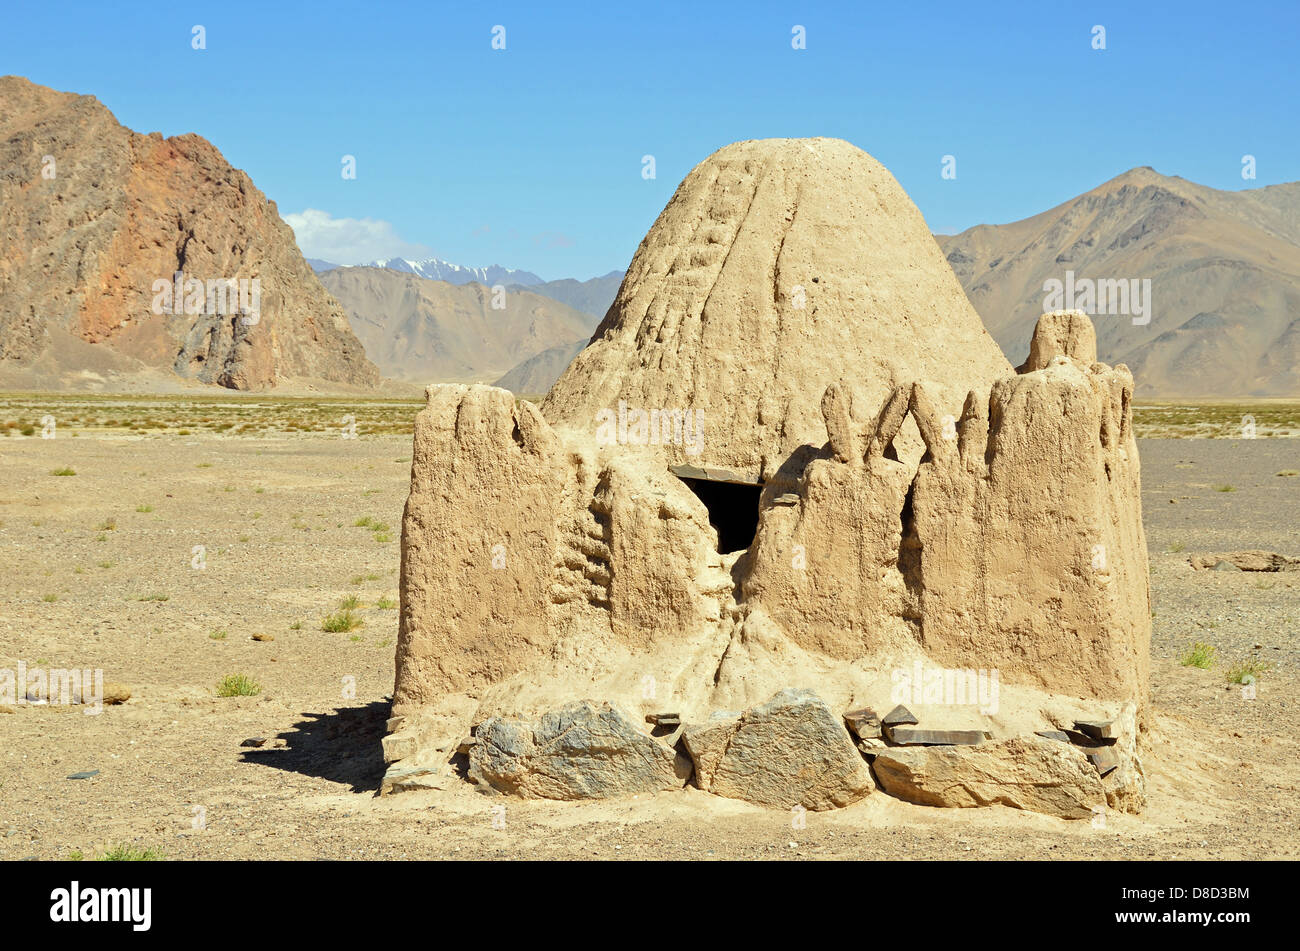 Tumba antigua hecha de ladrillos de barro simple en la meseta de Pamir Foto de stock